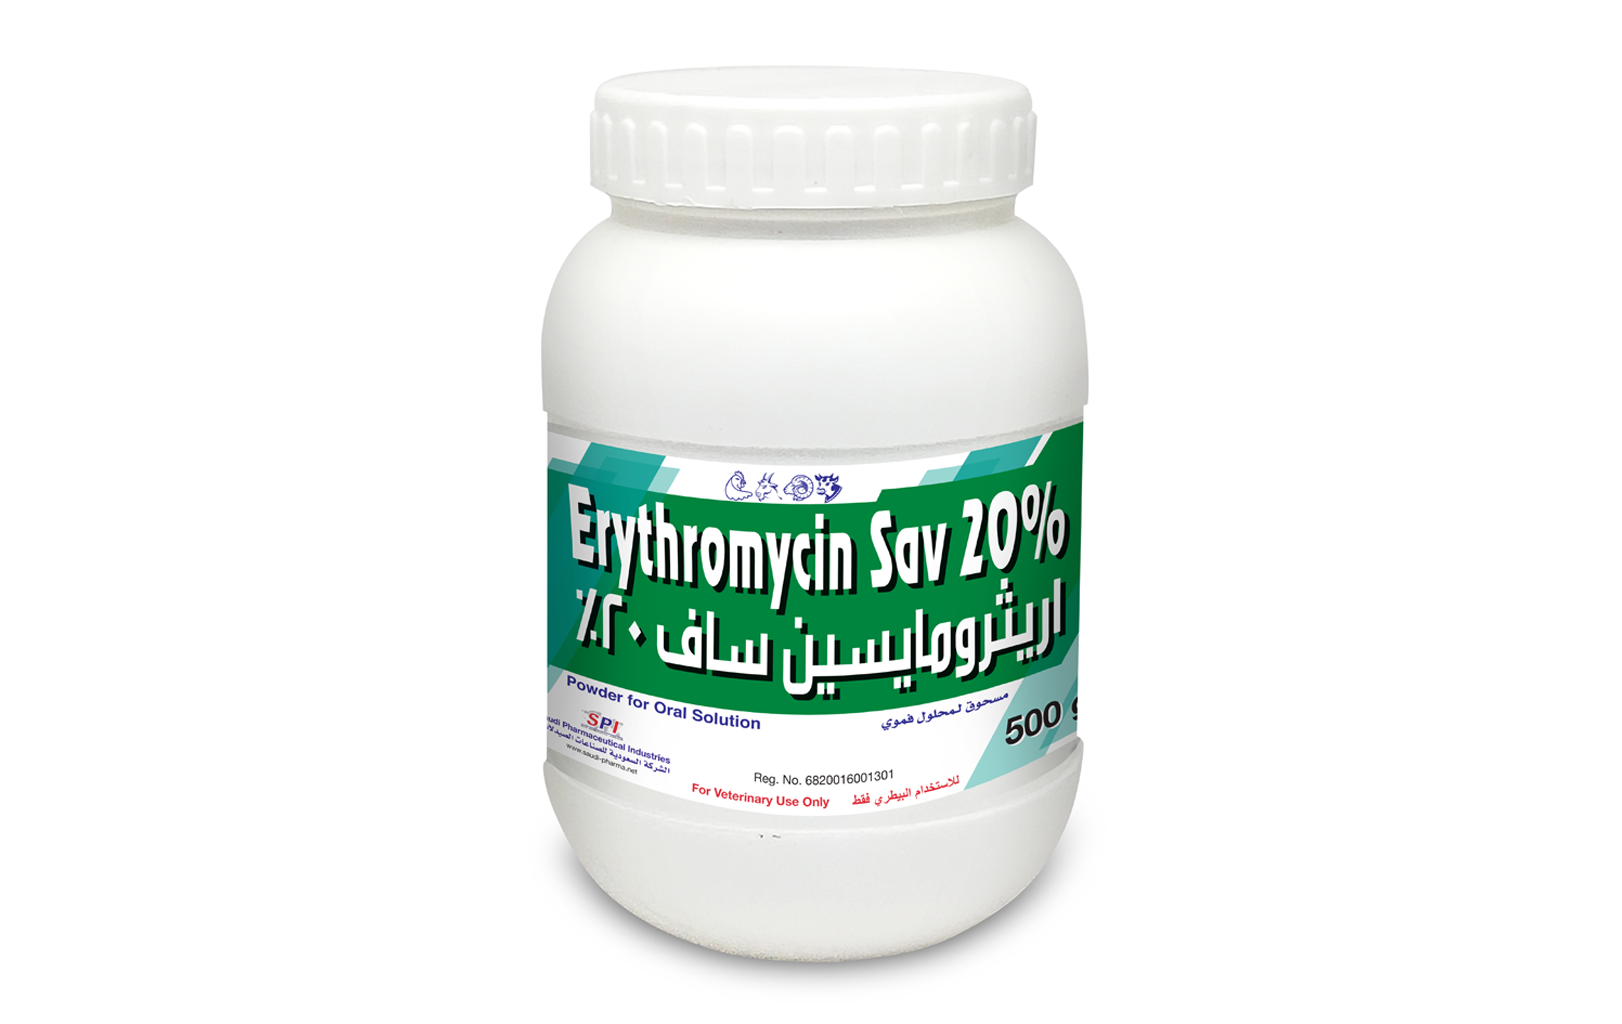 Erythromycin Sav 20% 500g